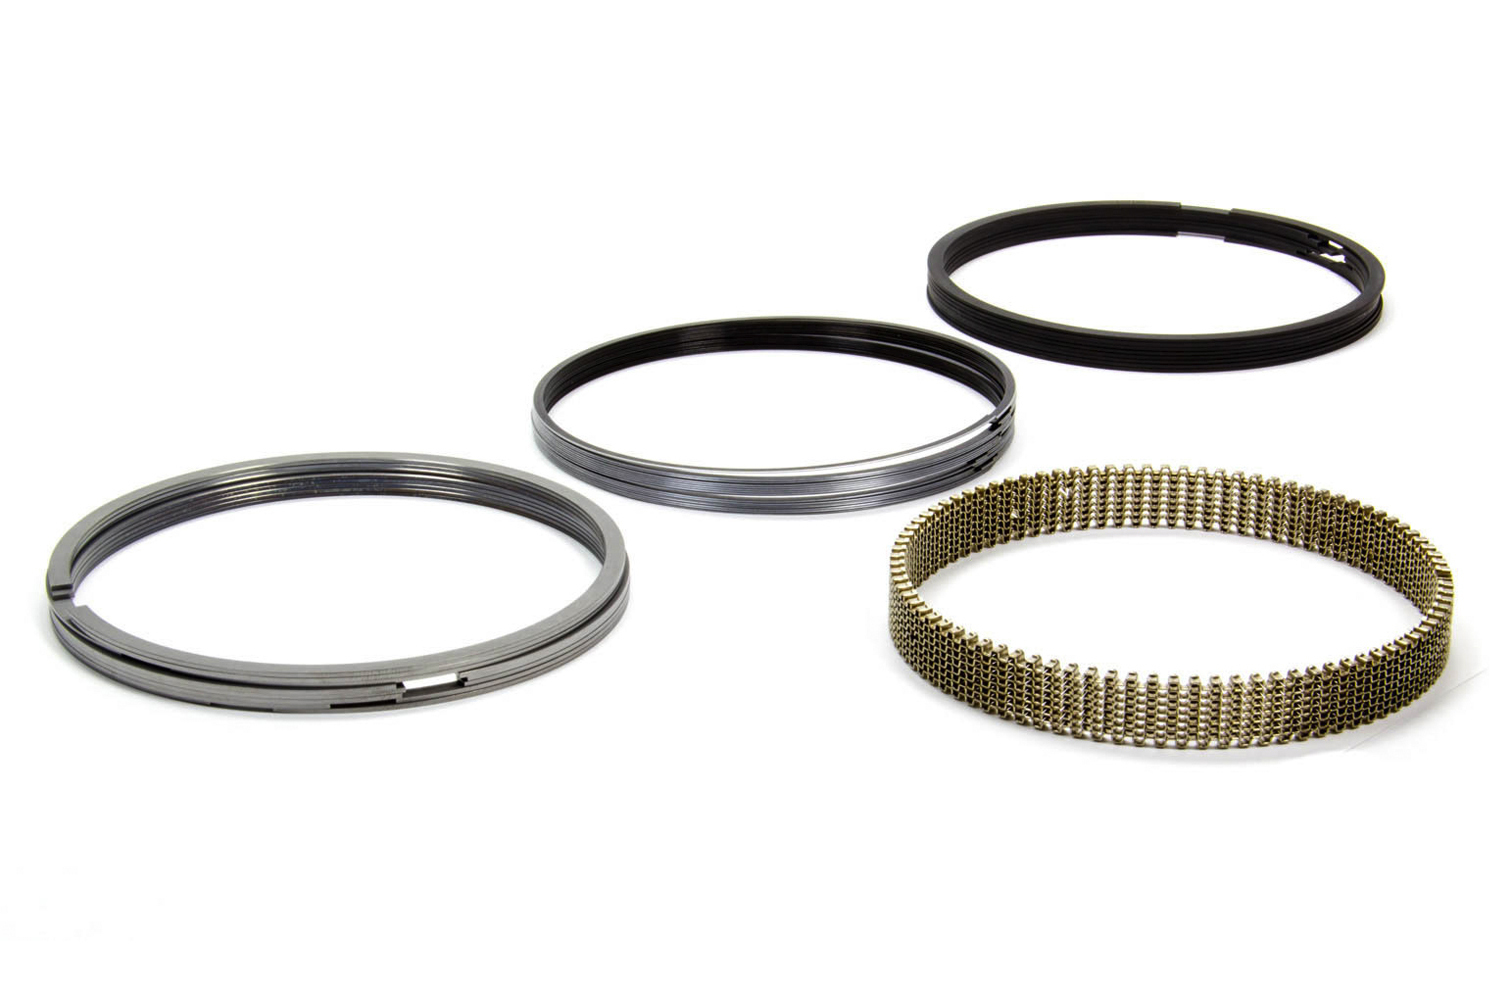 Total Seal AP Steel Piston Rings CS2012-65 1.5 1.5 3.0mm 4.185 Bore File Fit